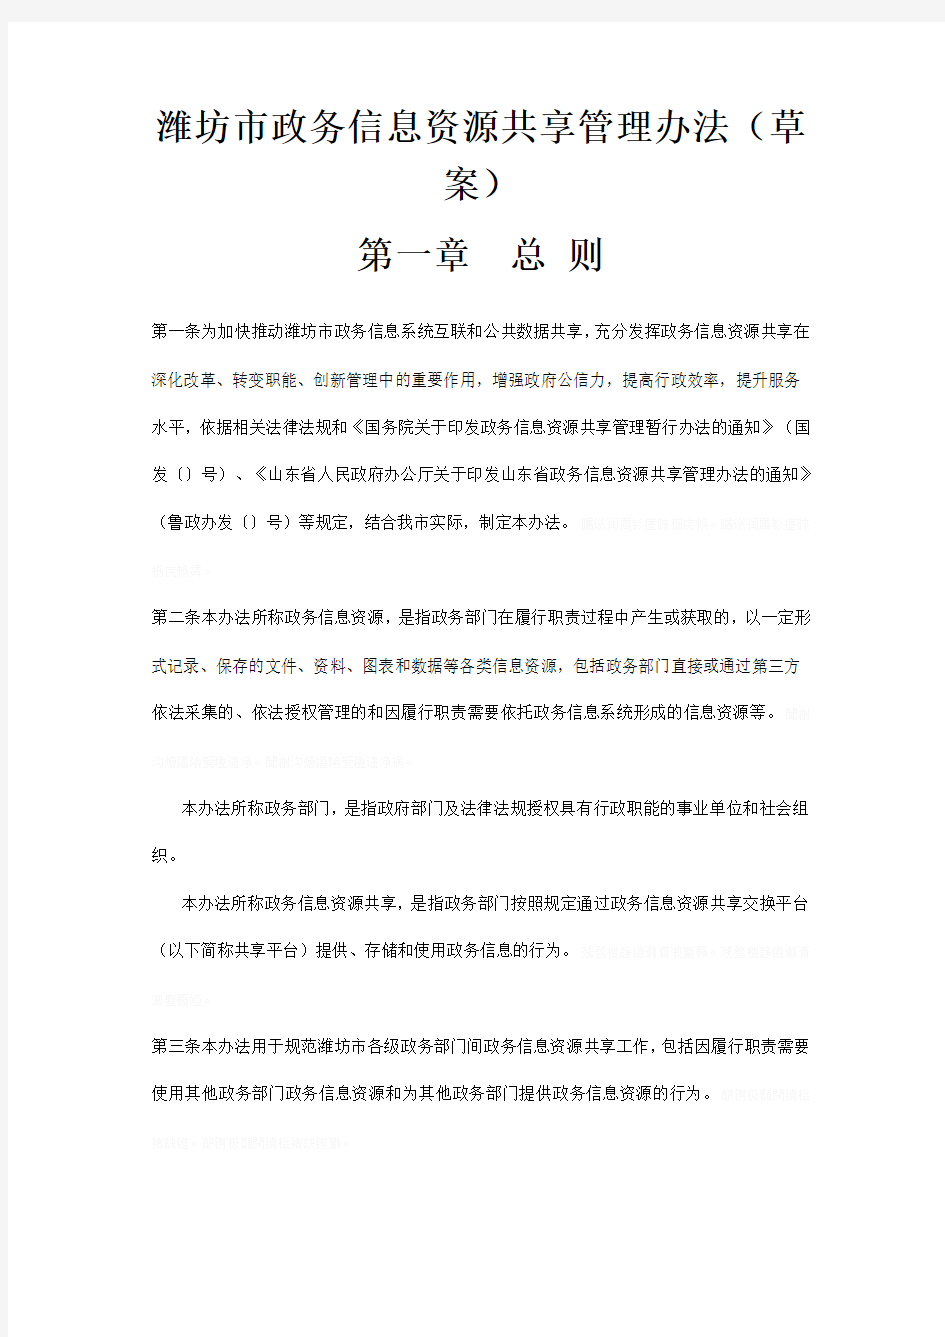 潍坊市政务信息资源共享管理办法(草案)